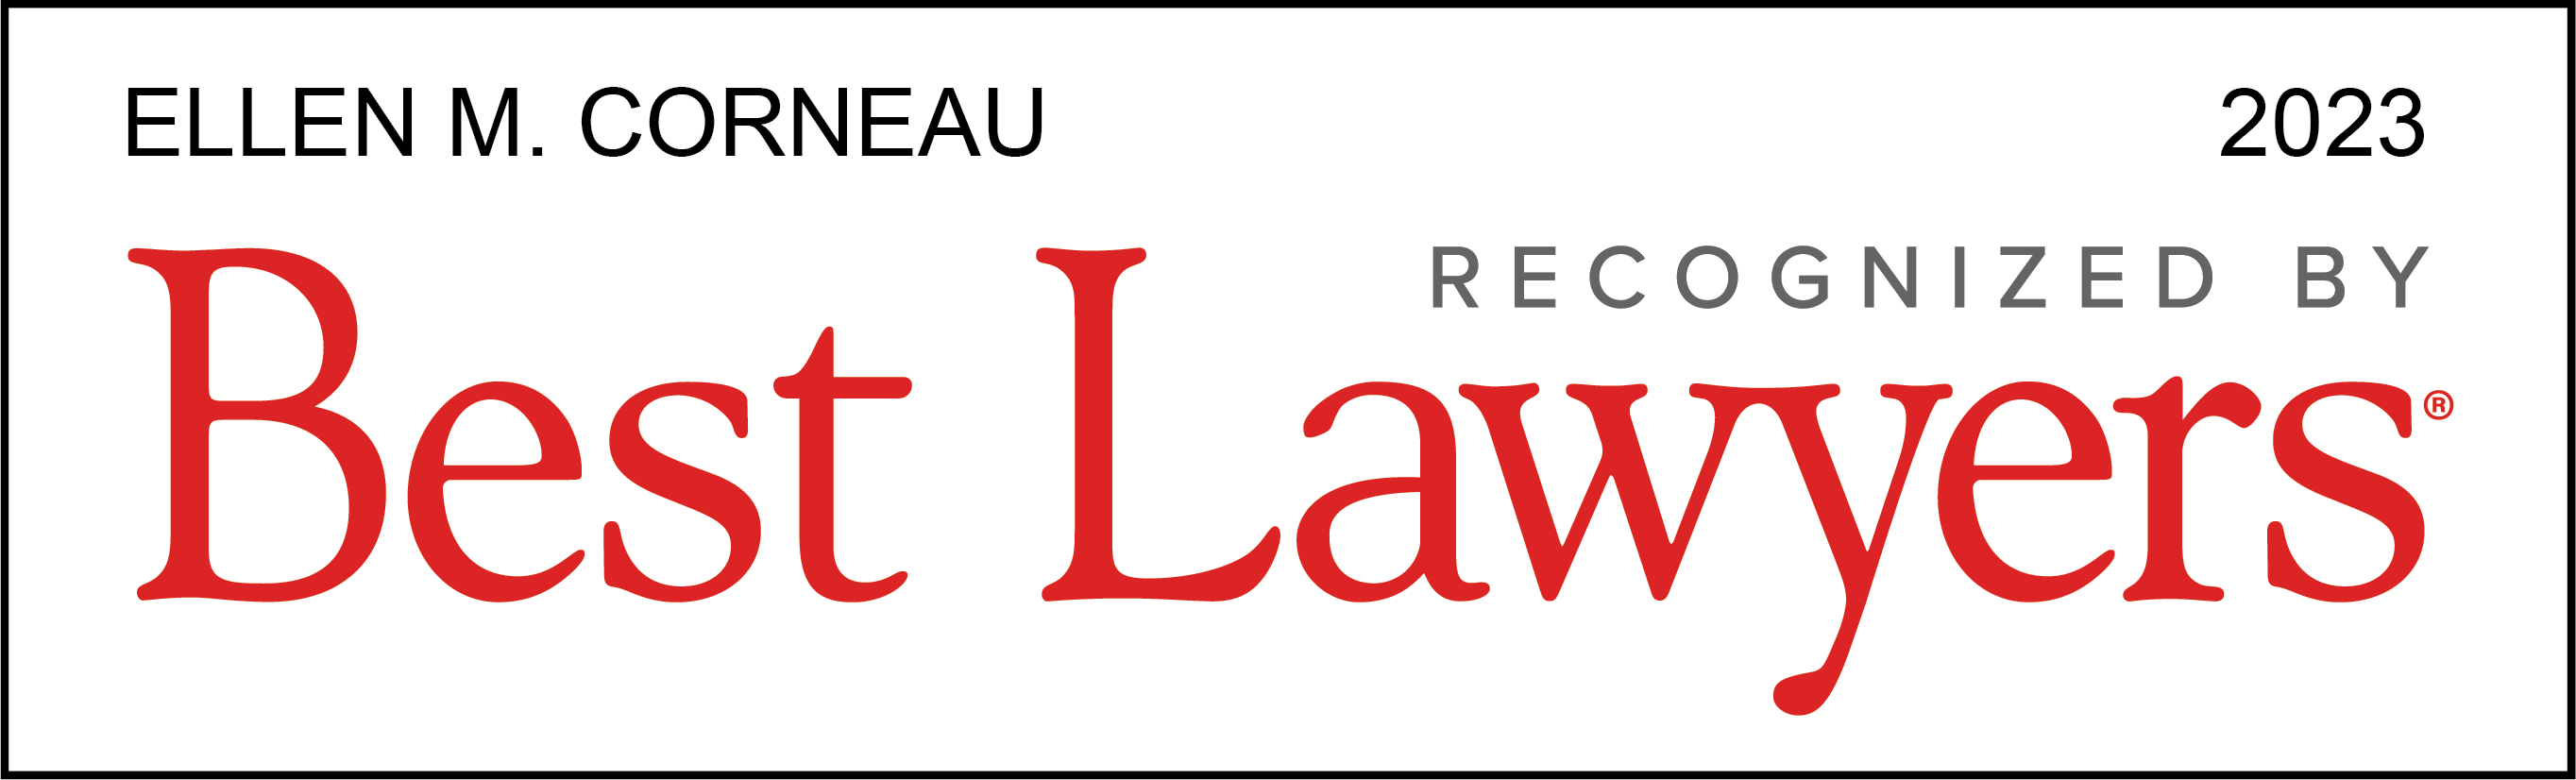 Best Lawyers Award: Ellen M. Corneau, Savage Law Partners, LLP